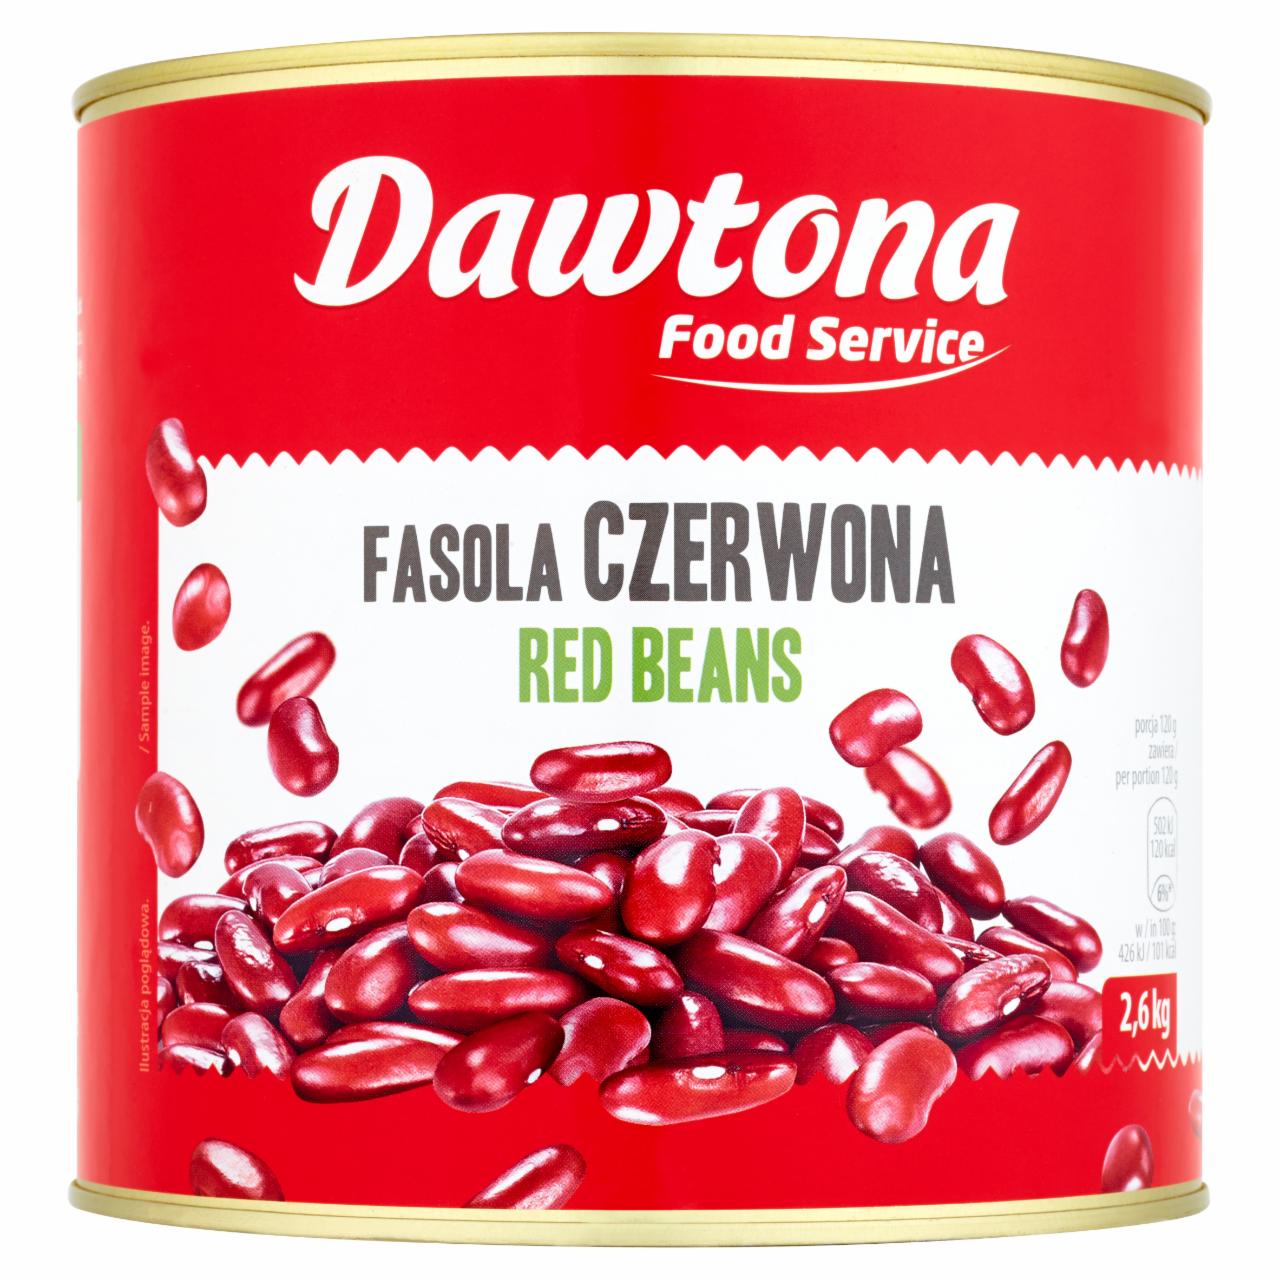 Zdjęcia - Dawtona Food Service Fasola czerwona 2,6 kg